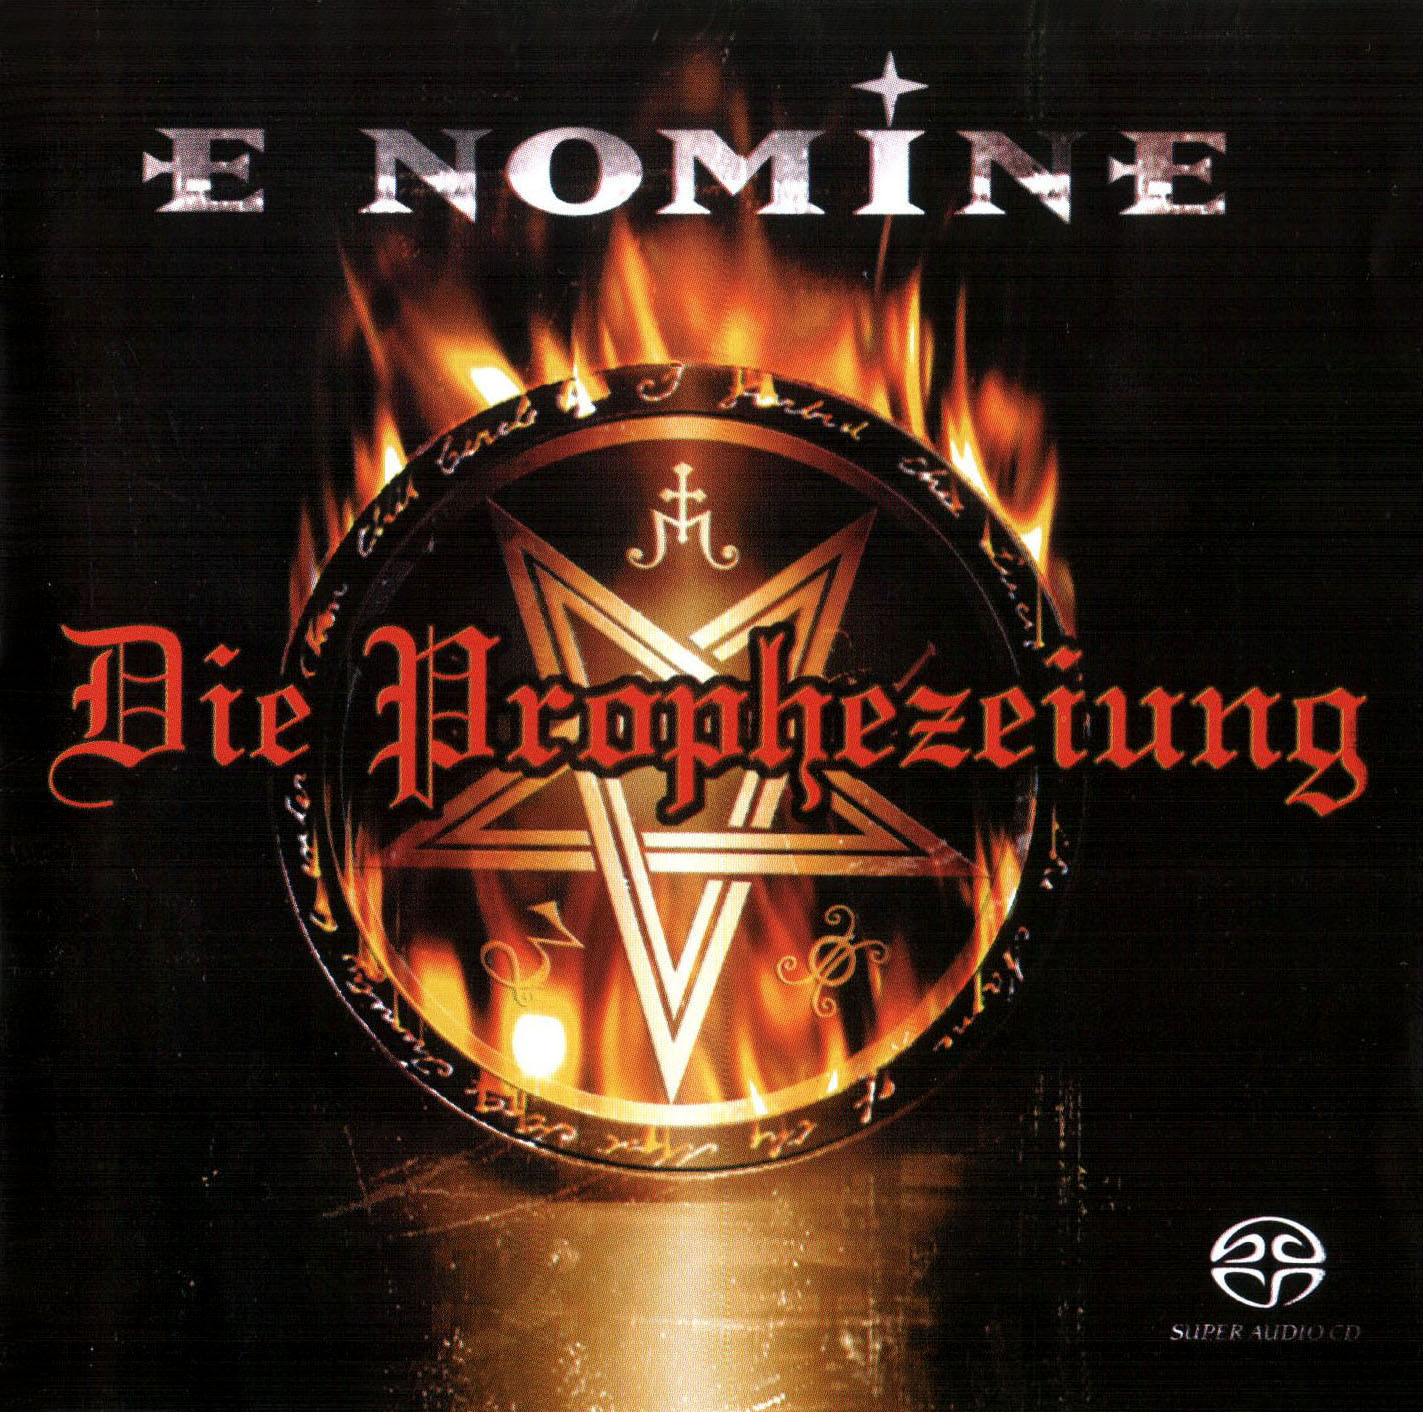 E Nomine – Die Prophezeiung (2003) MCH SACD ISO + FLAC 24bit/48kHz